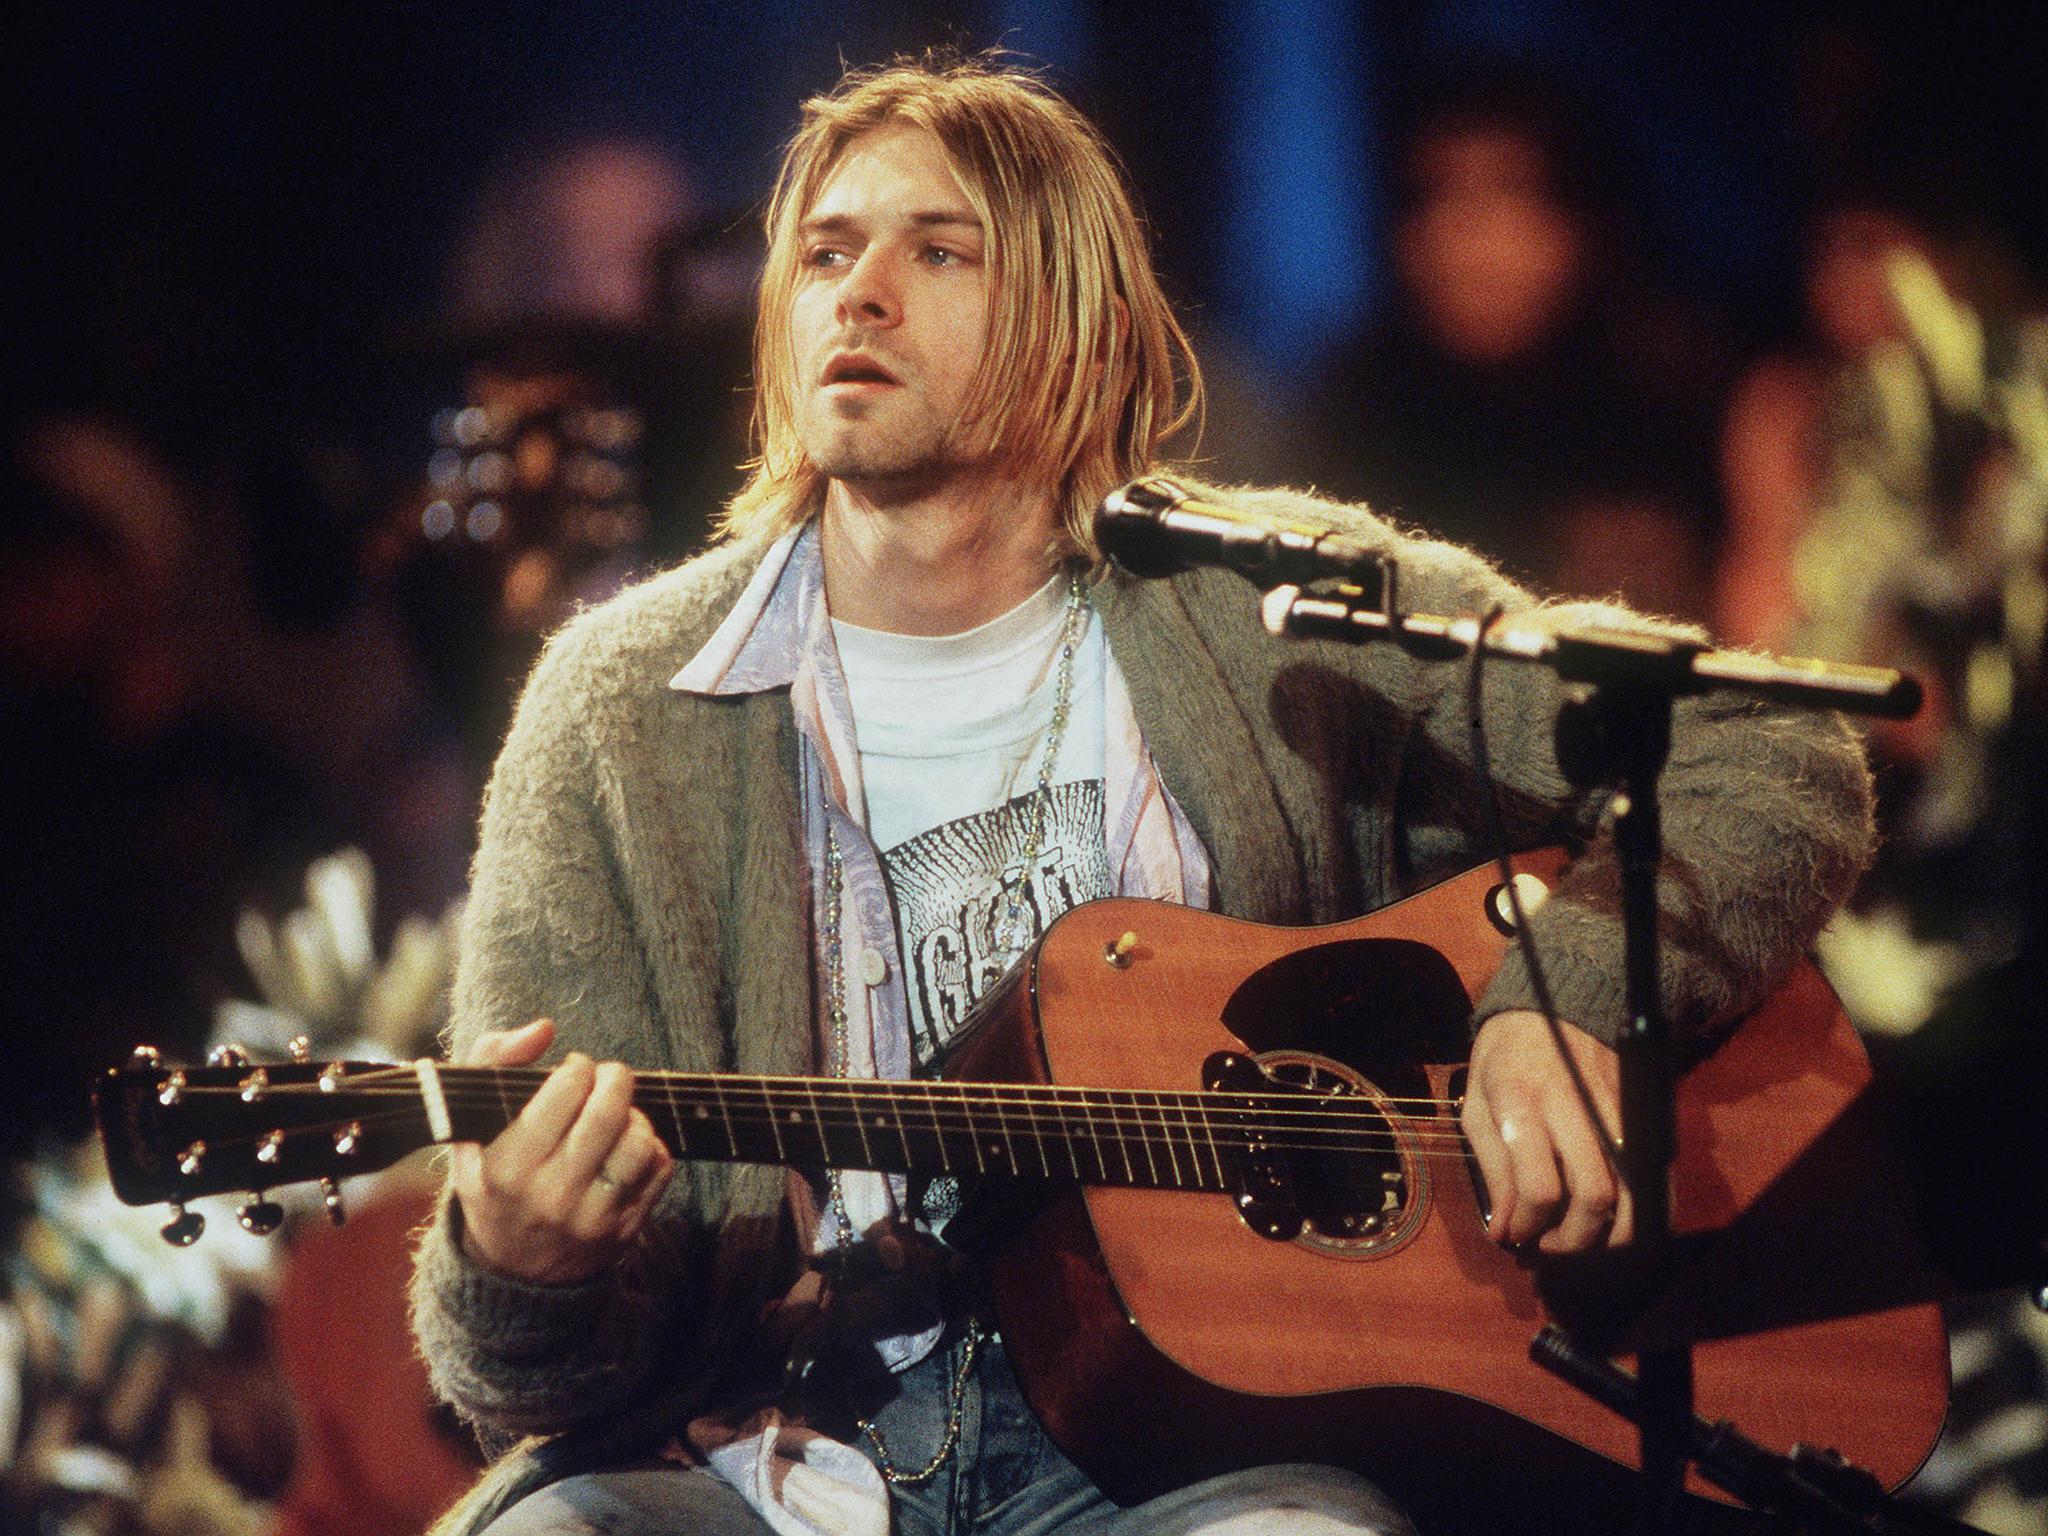 cardigan do Kurt Cobain